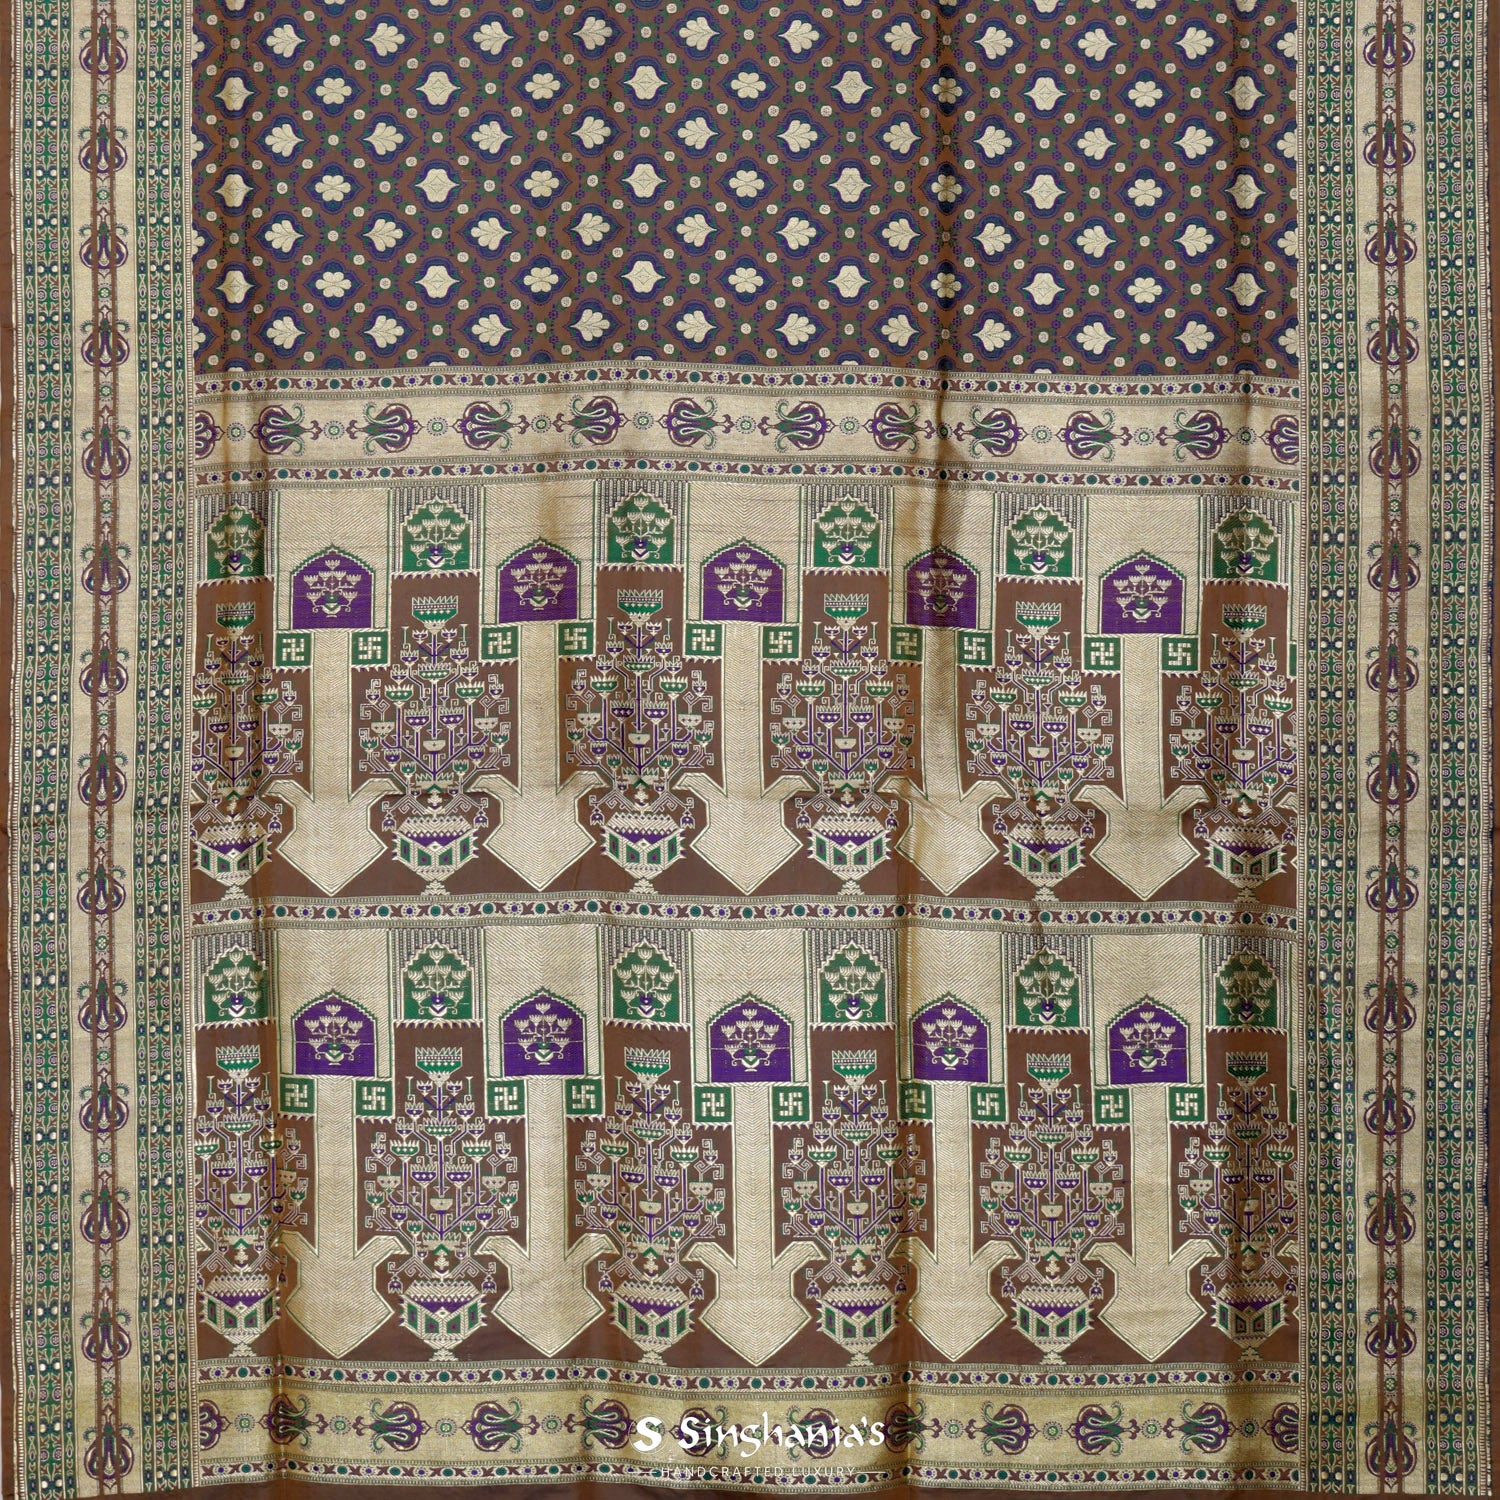 Grayish-Brown Silk Saree With Floral Banarasi Weaving